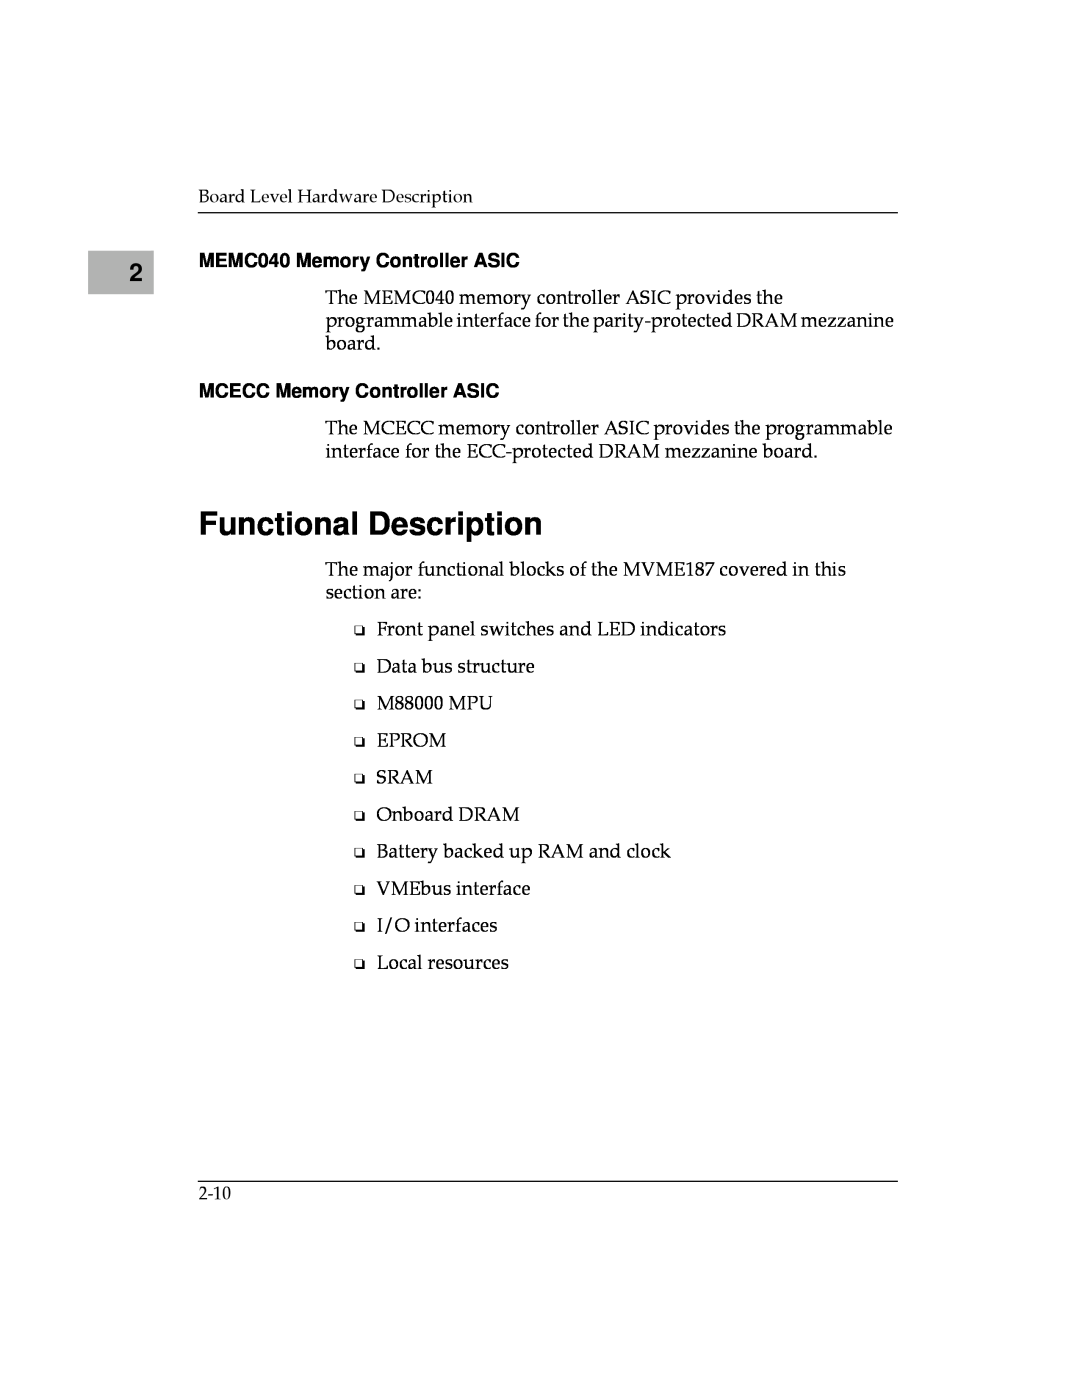 Motorola MVME187 manual Functional Description, MEMC040 Memory Controller ASIC, MCECC Memory Controller ASIC 